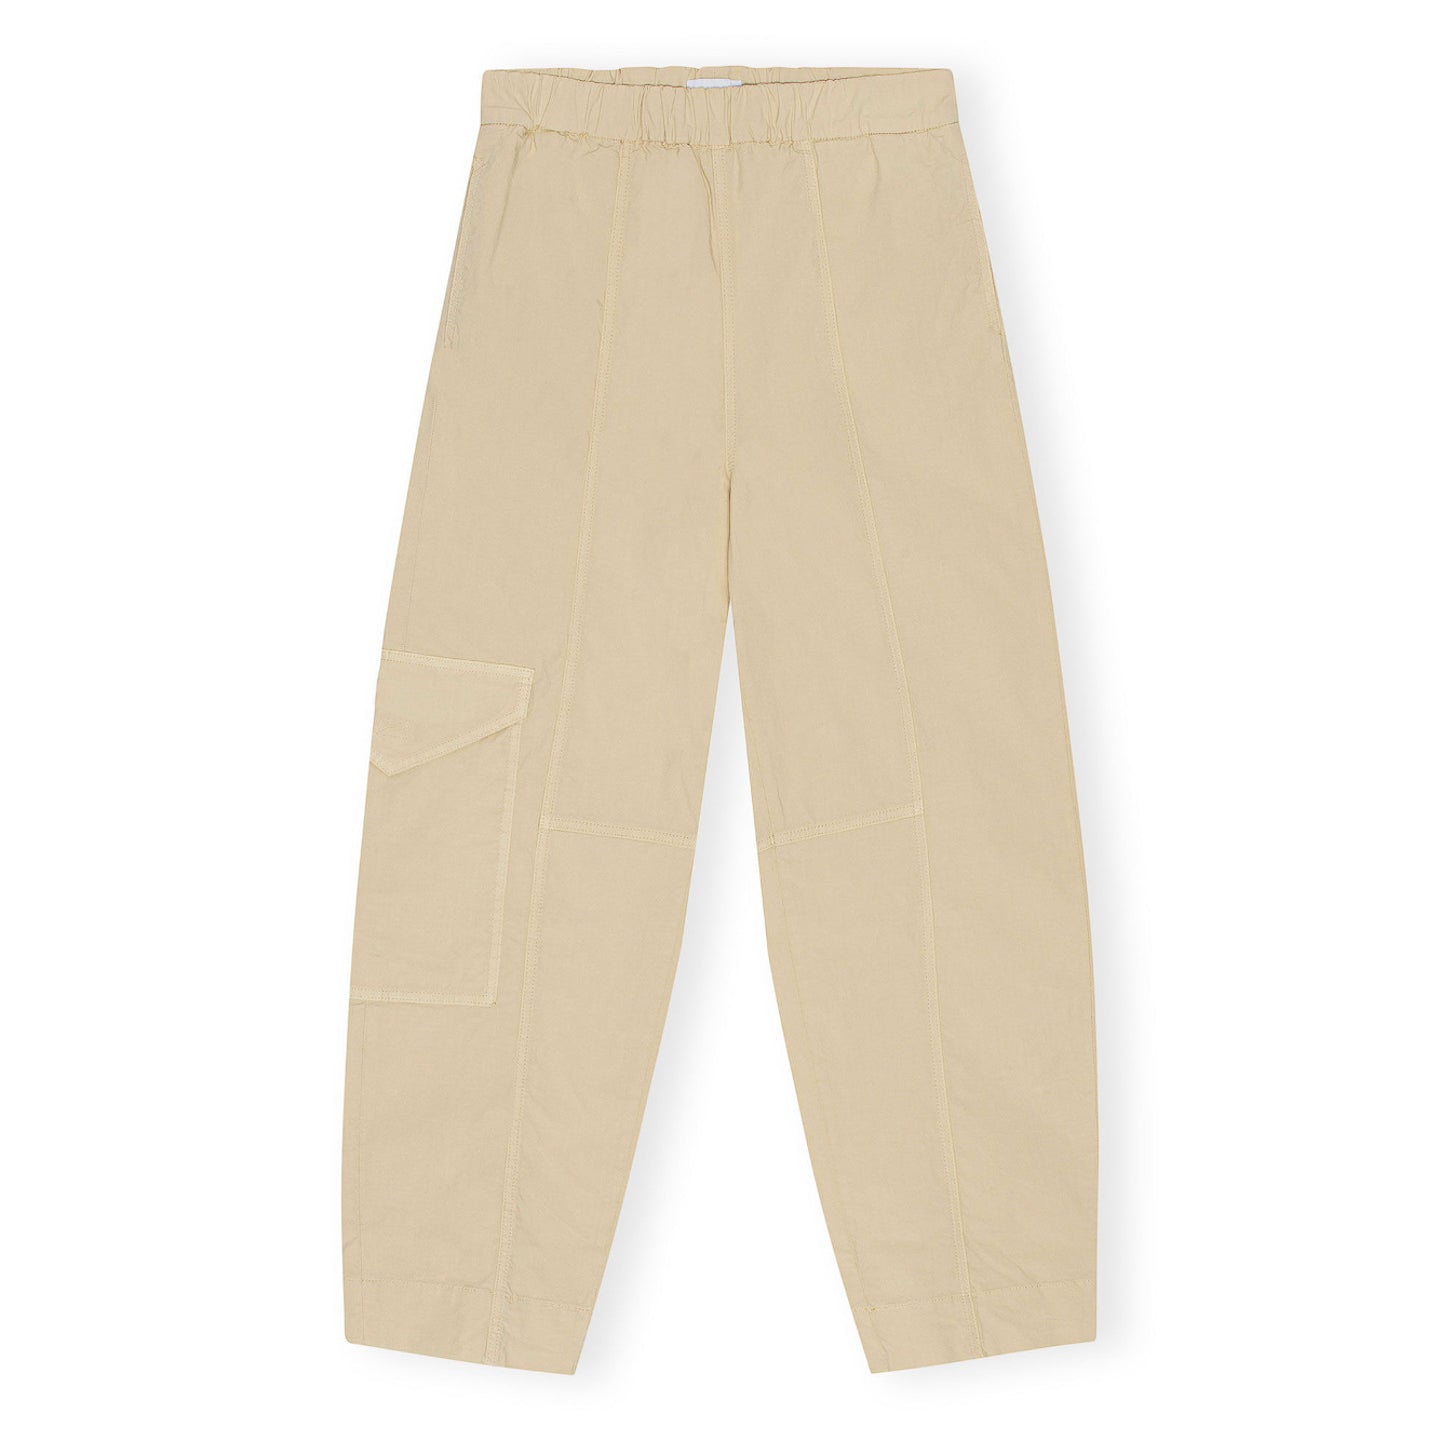 Ganni Washed Cotton Canvas Elasticated Curve Pants 'Pale Khaki'